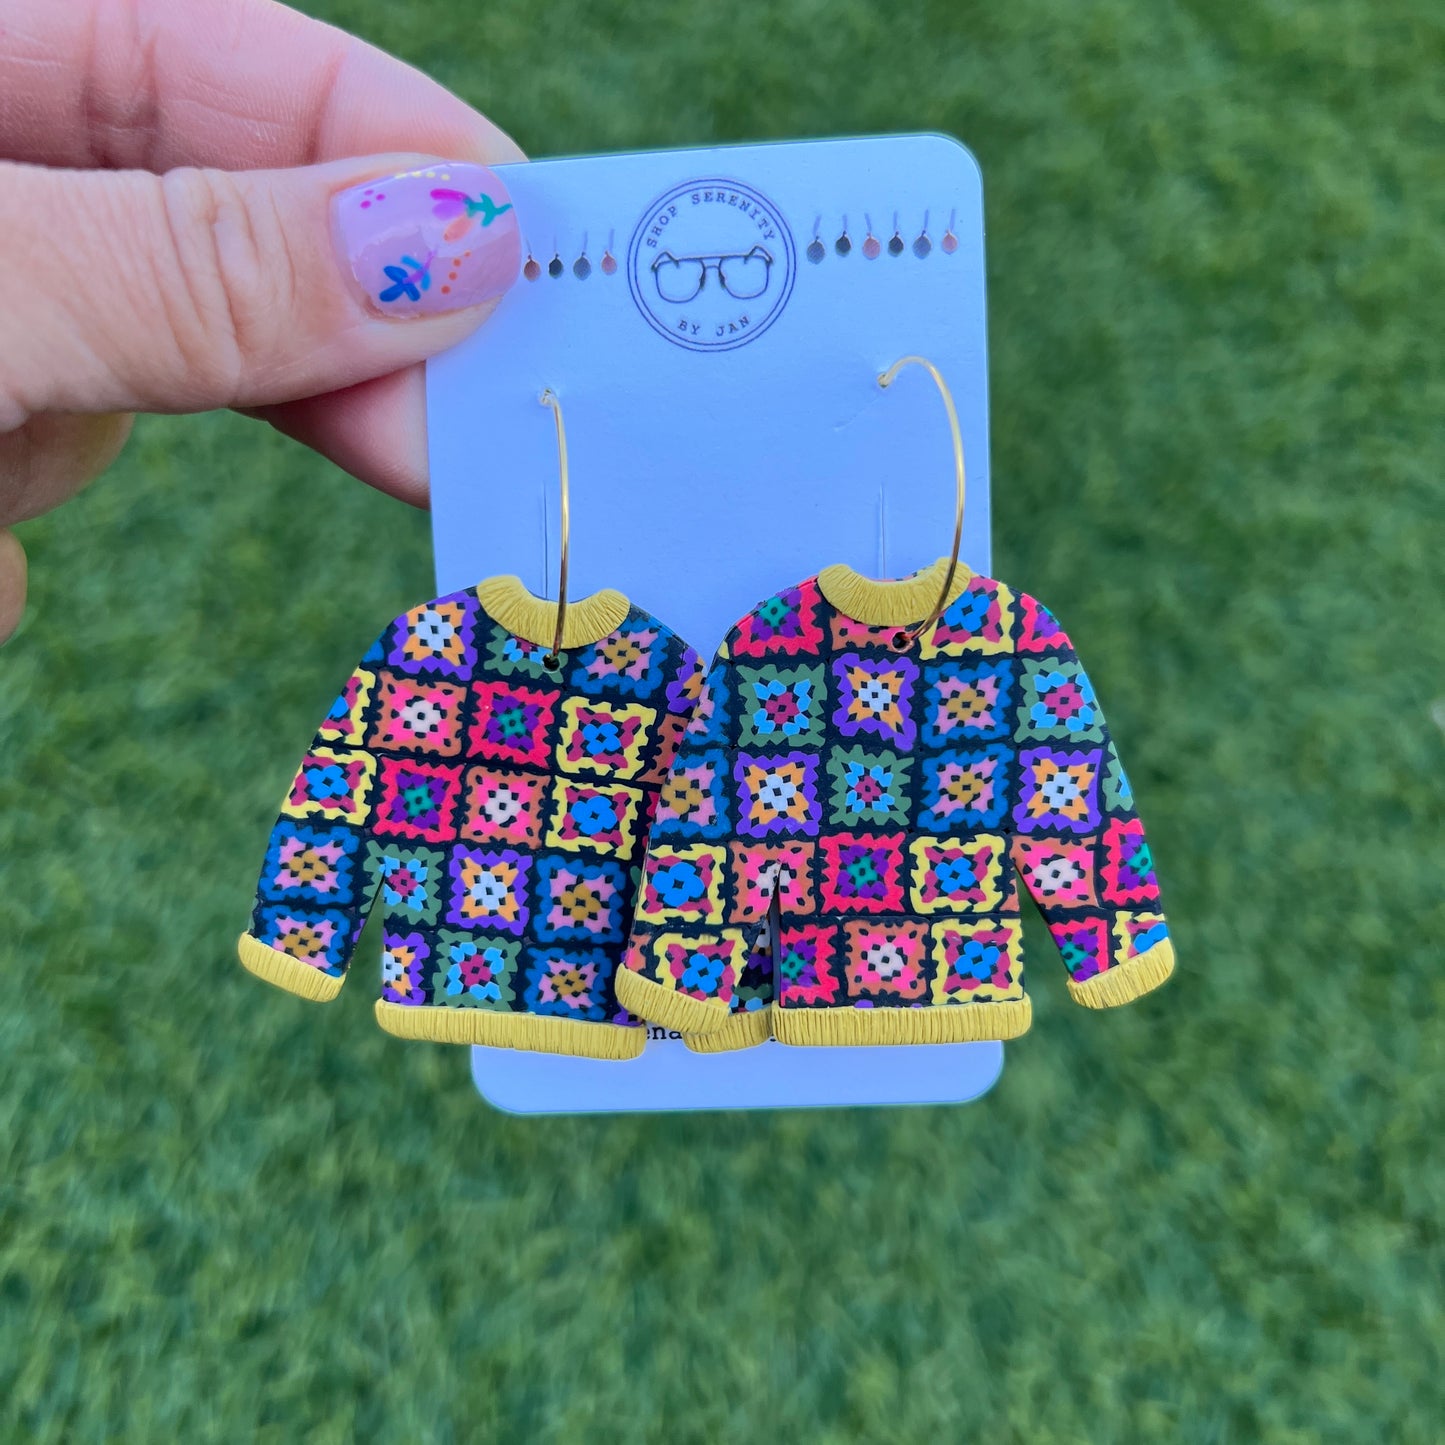 Granny Square Crochet Earrings